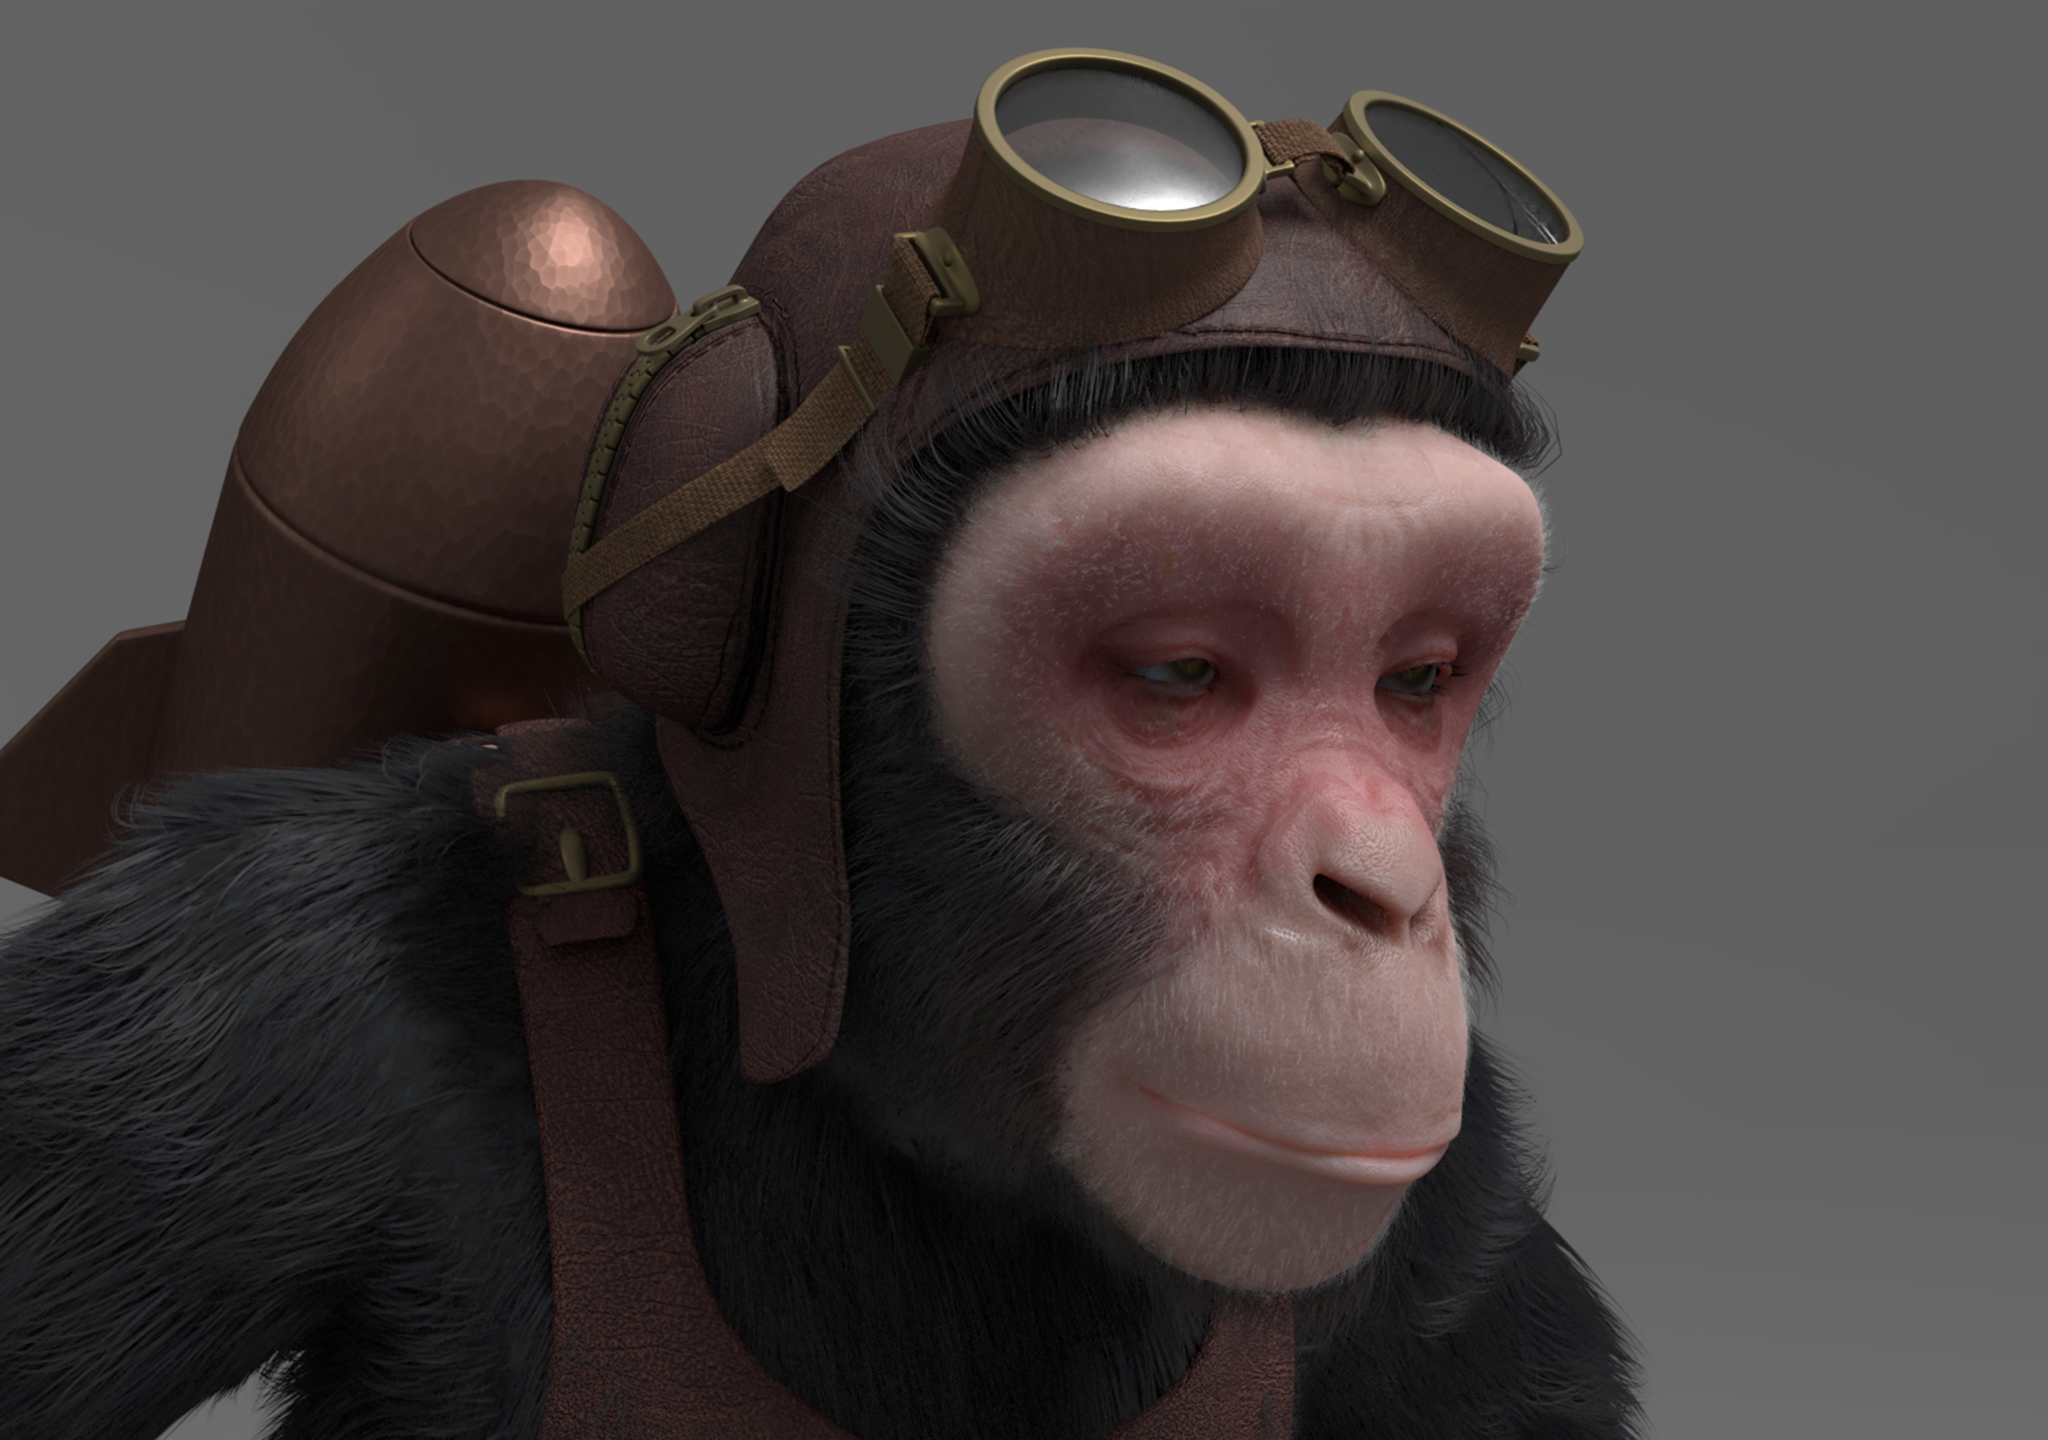 Chimp